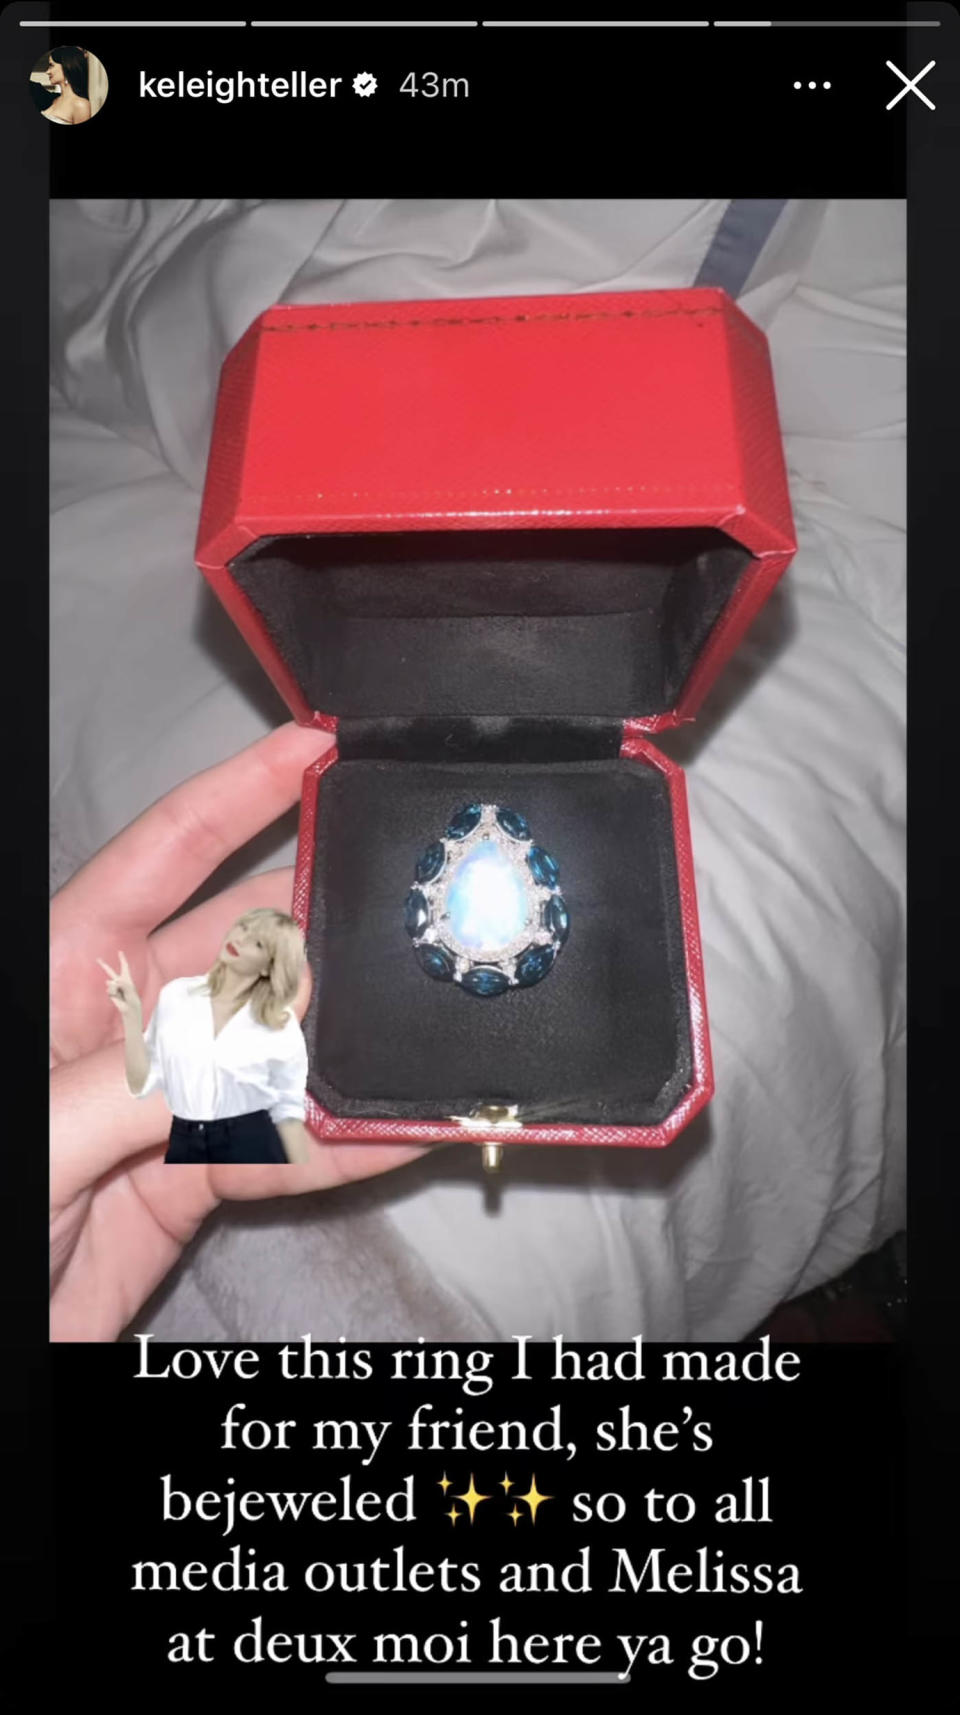 Keleigh Sperry revealed on Instagram that she had Taylor Swift's new opal ring custom made for her. (@keleighteller via Instagram)